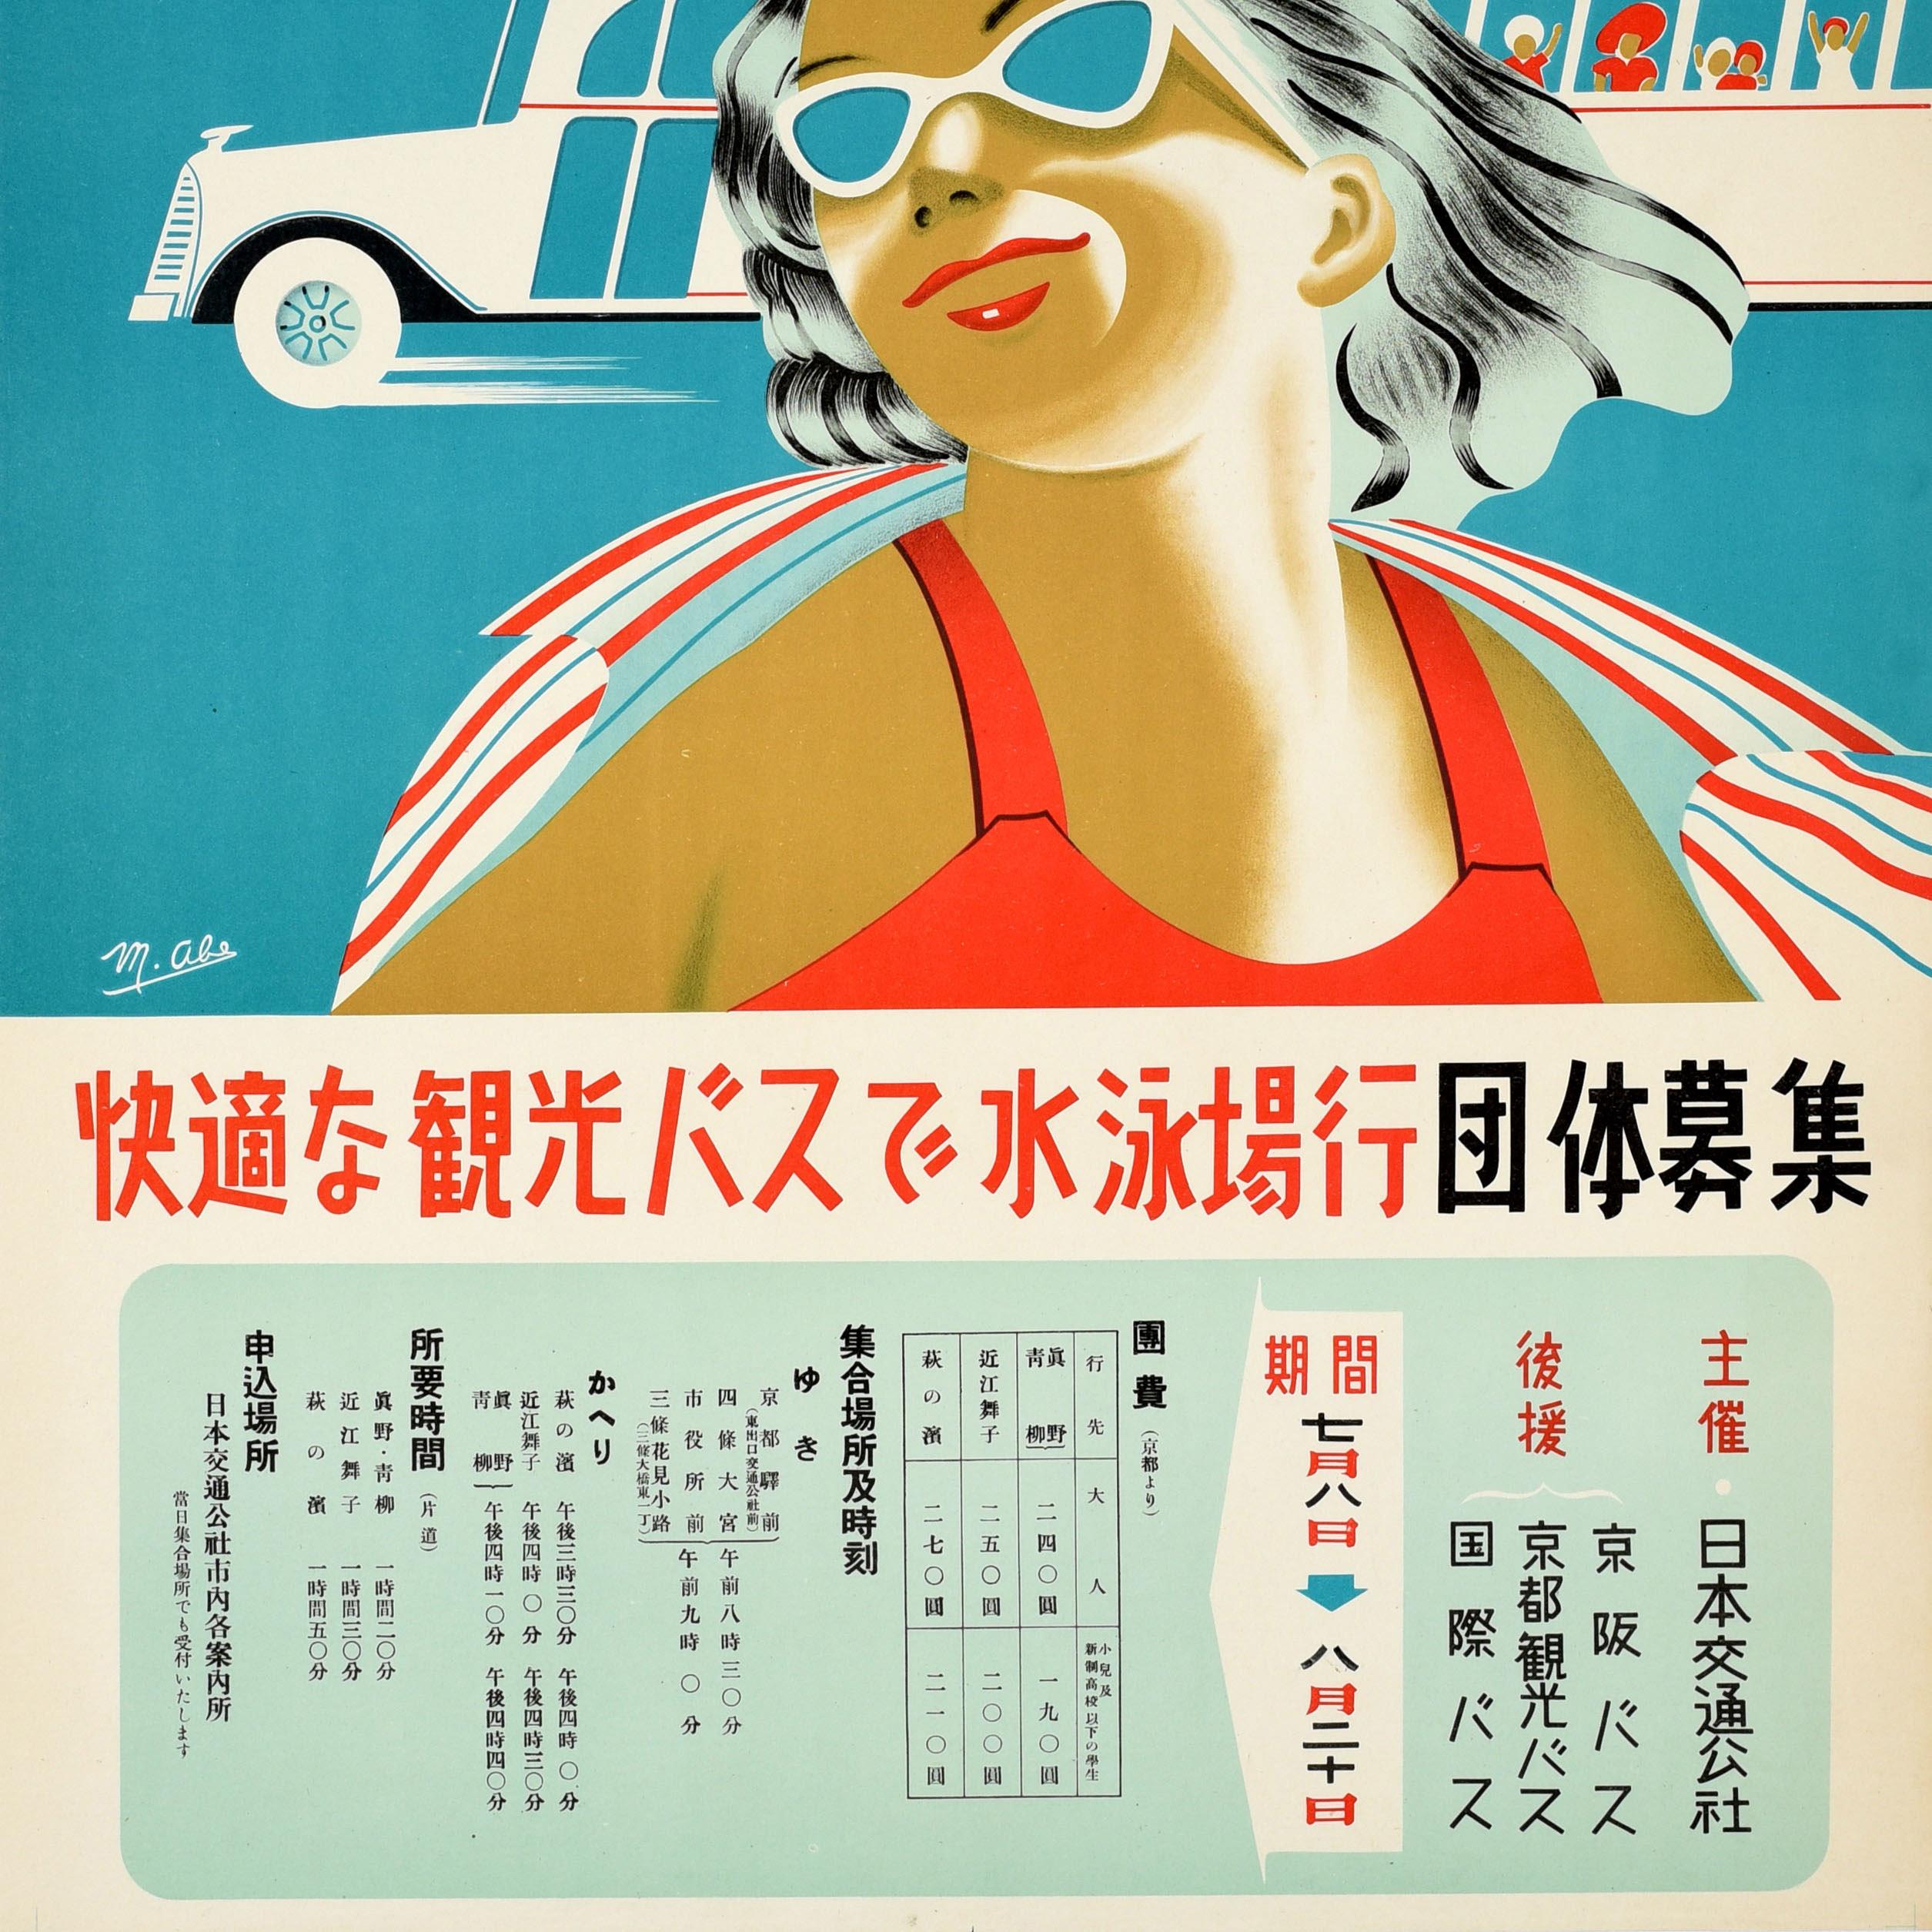 Original-Reiseplakat für den Biwa-See in Japan, das für Gruppenreisen zum Badesee mit einem komfortablen Reisebus wirbt. Es zeigt eine lächelnde Dame mit Sonnenbrille und rotem Badeanzug mit einem bunten Handtuch über den Schultern vor einem Bus mit